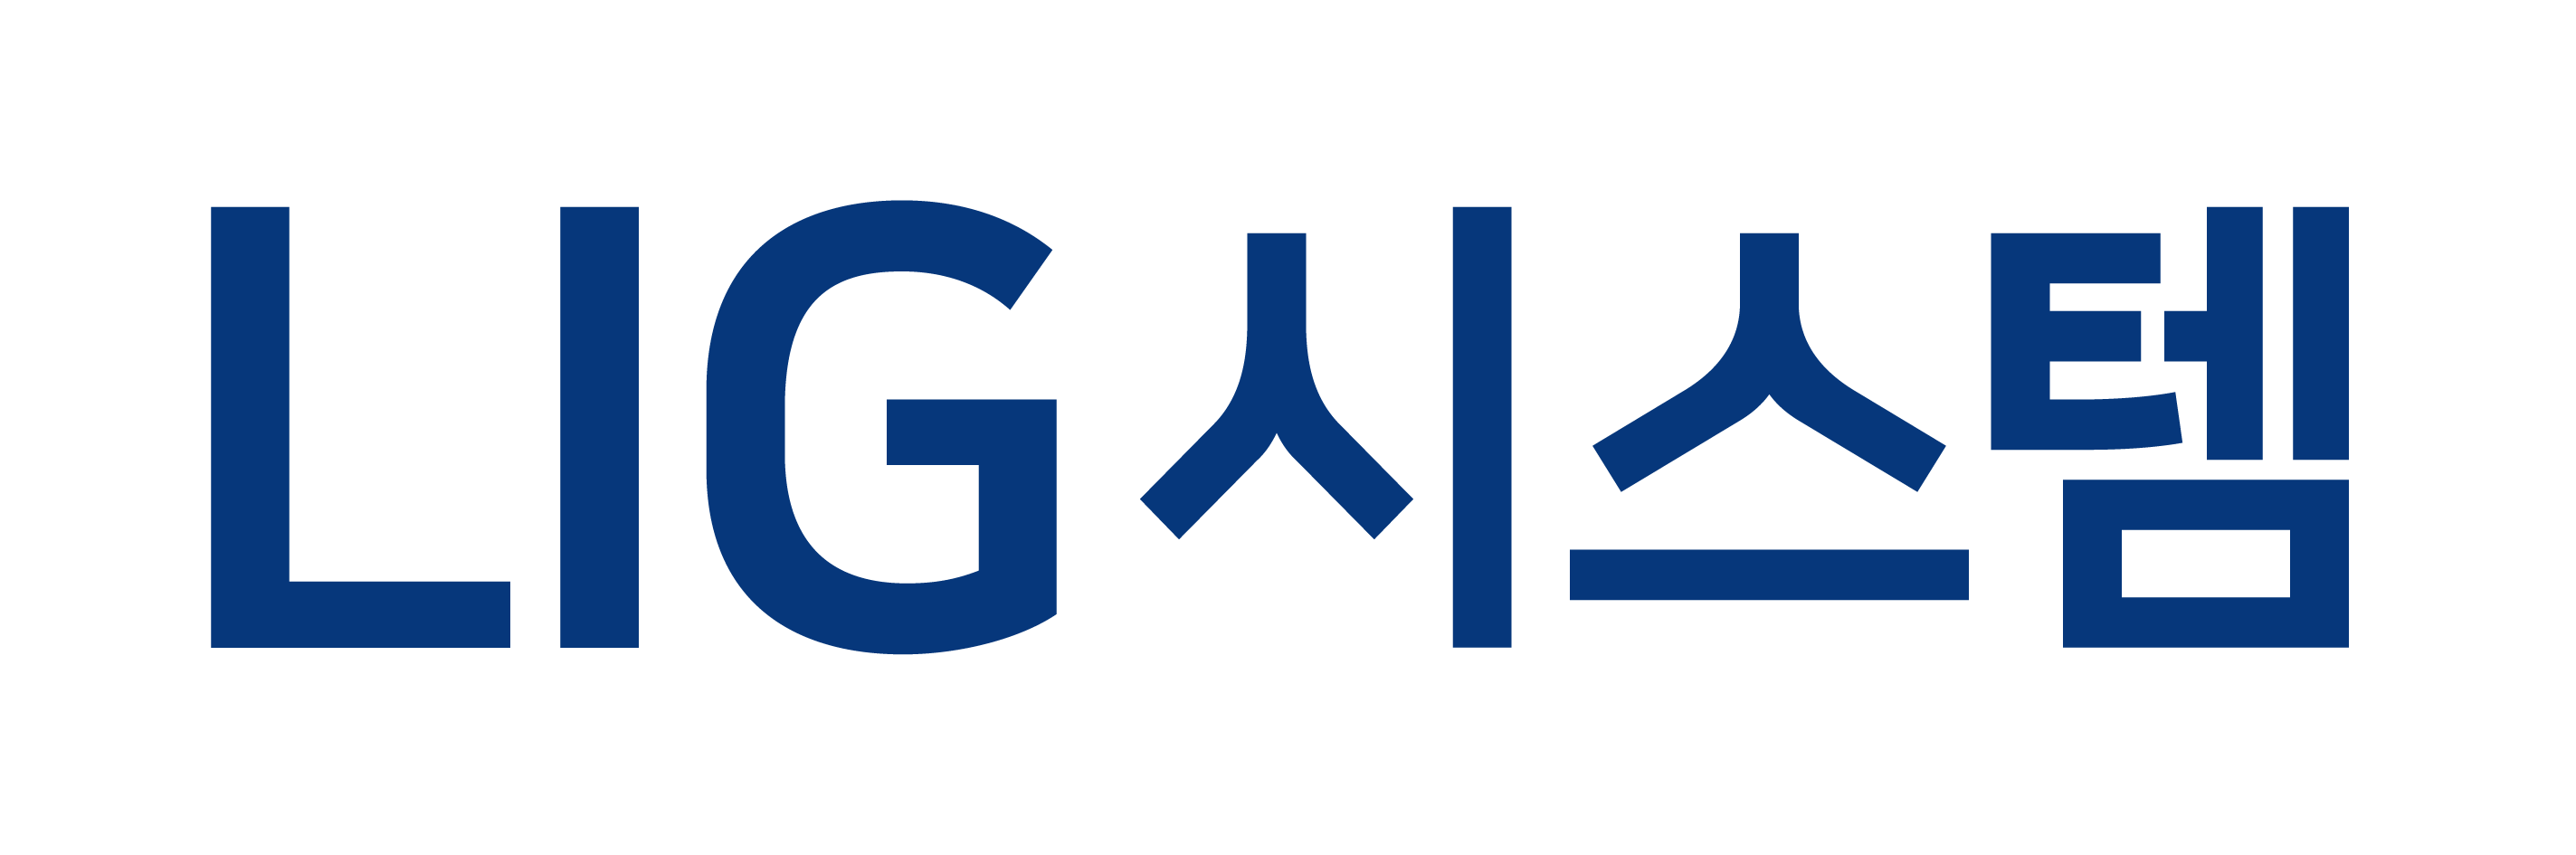 엘아이지의 계열사 (주)엘아이지시스템의 로고